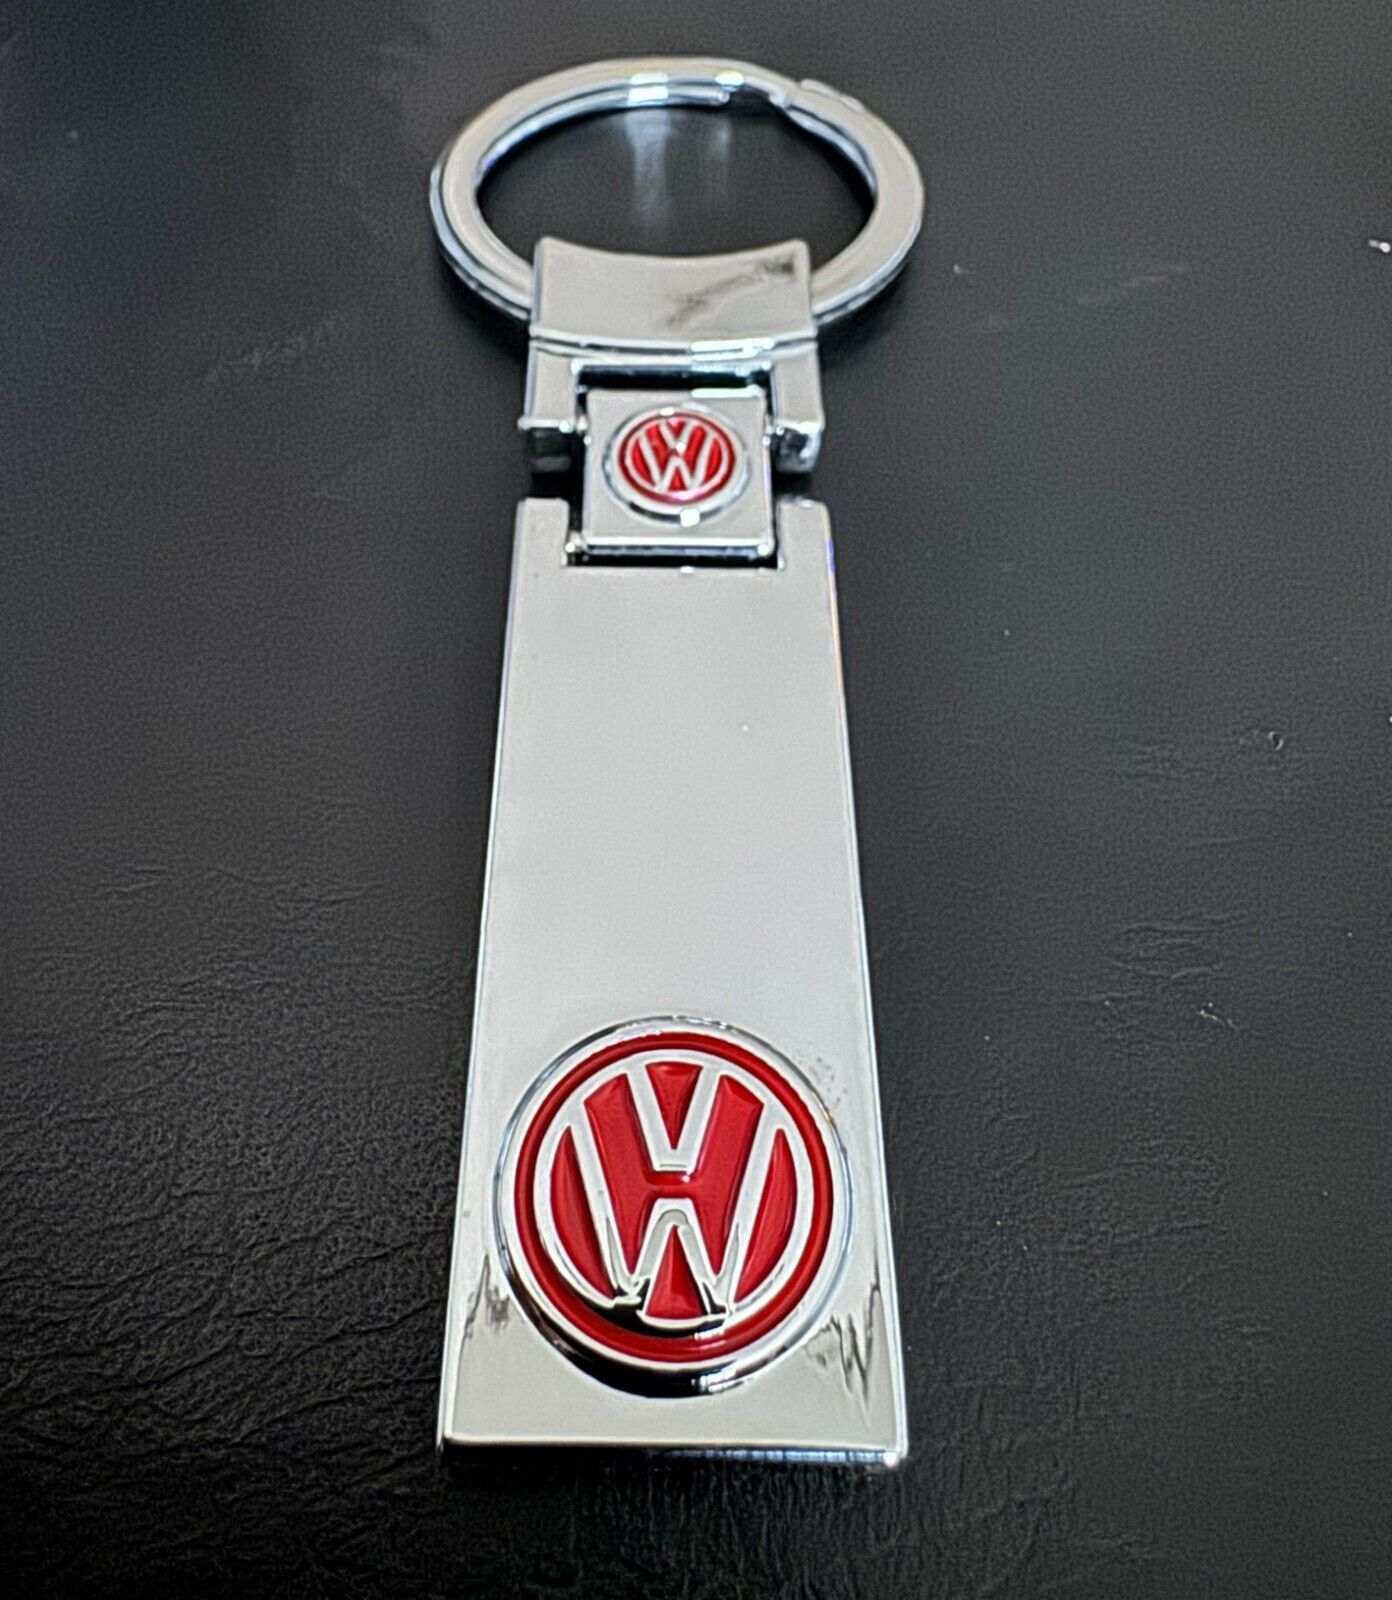 Nicest Elegant VW Volkswagen Keychain Online - Sleek Mirror Finish , RED Logo